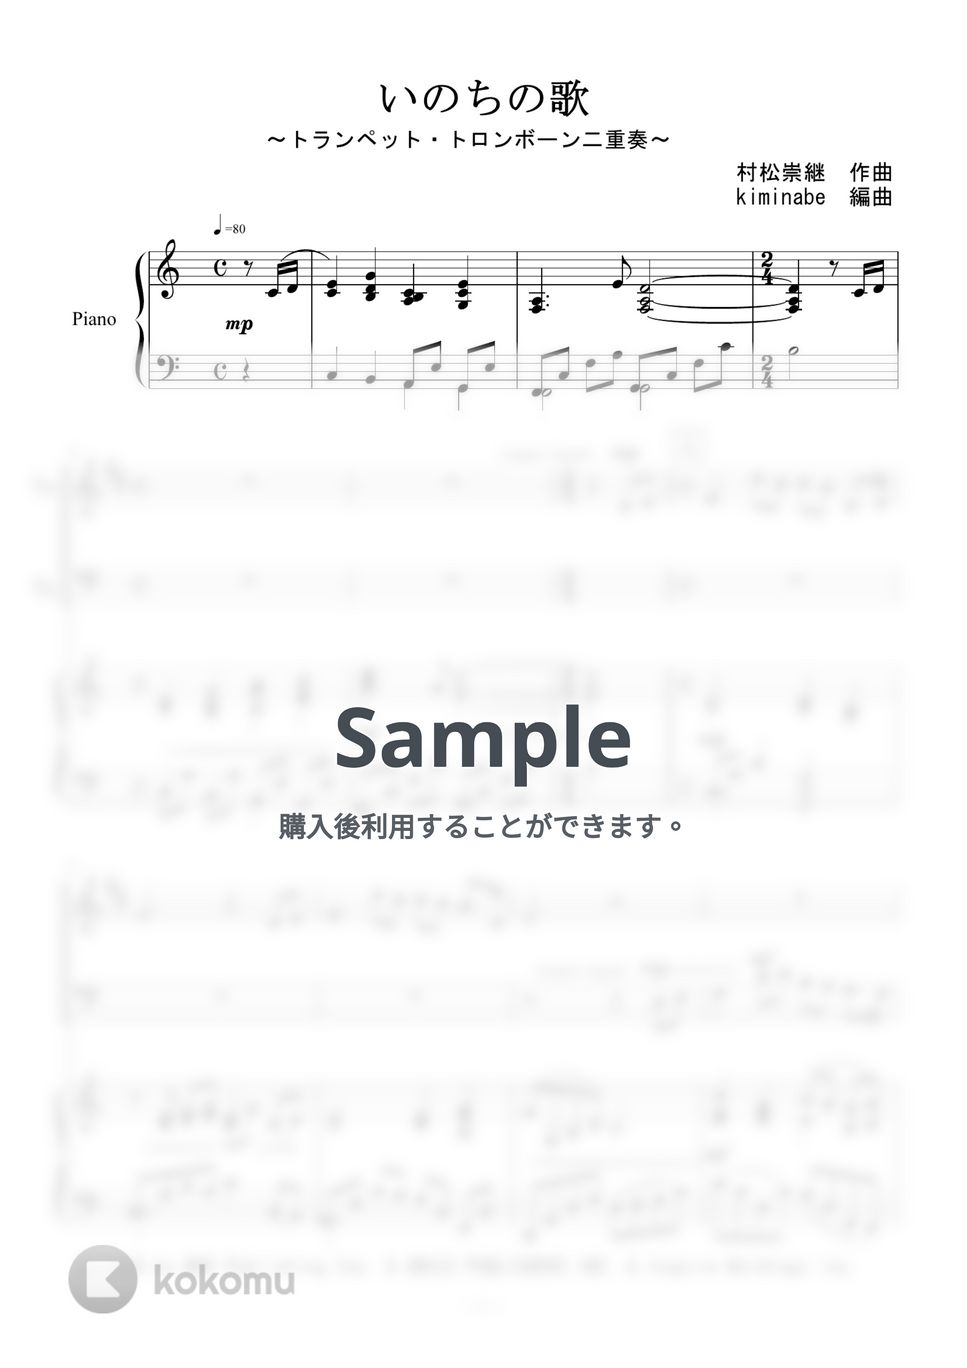 竹内まりや - いのちの歌 (トランペット・トロンボーン二重奏) by kiminabe